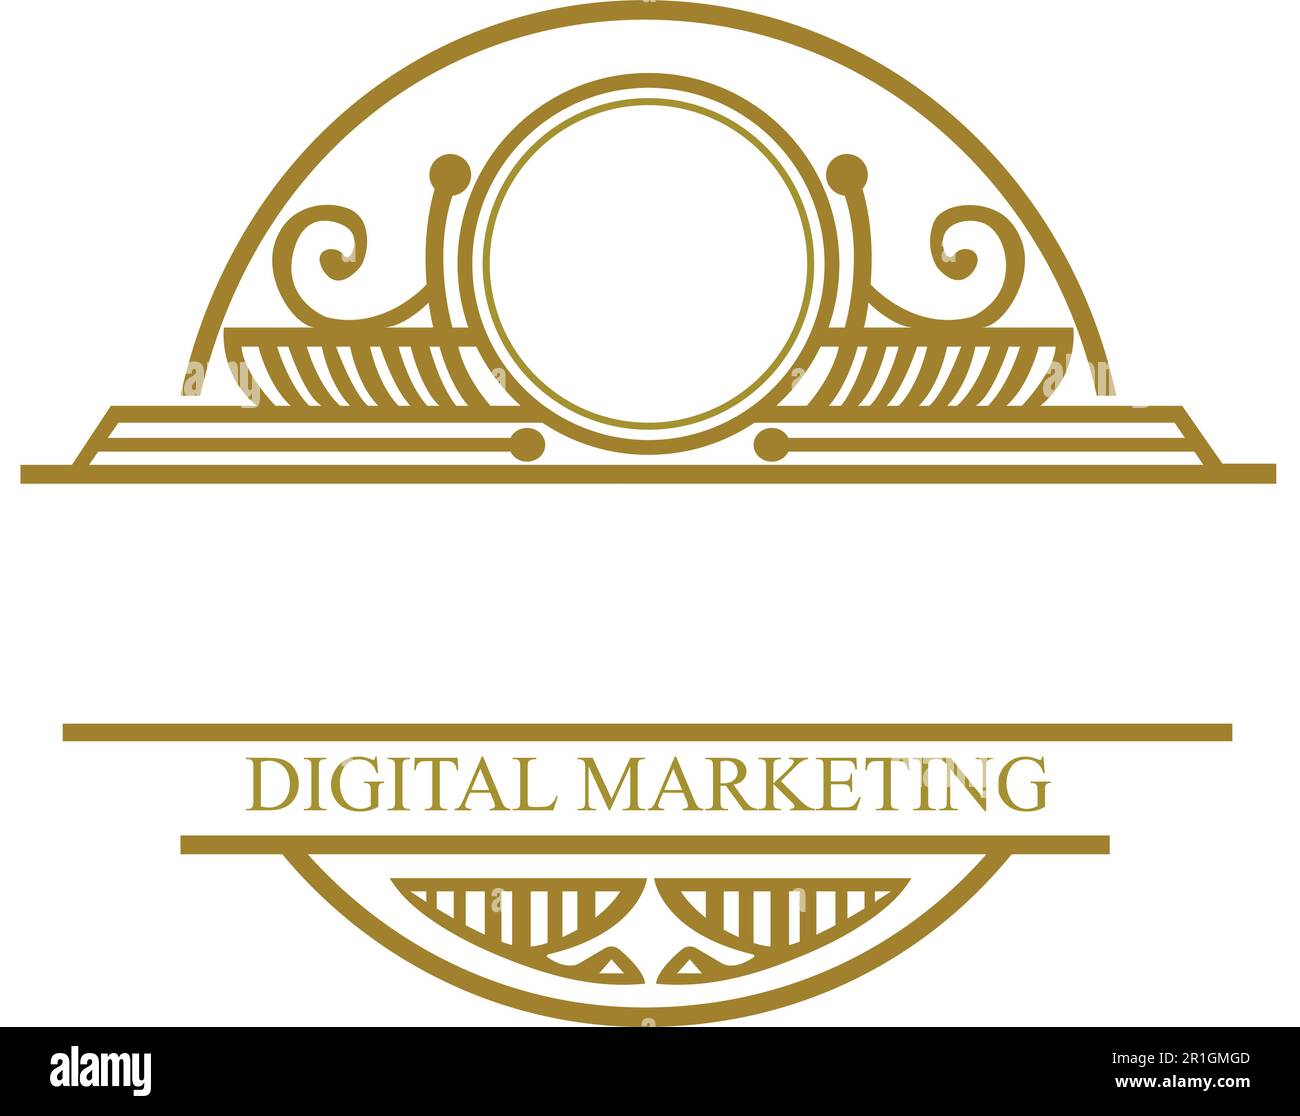 Die Vorlage für das Royal Kingdom Digital Marketing Logo ist ein leistungsstarkes und anspruchsvolles Design, das die Essenz von Königen, Professionalität und Su verkörpert Stock Vektor